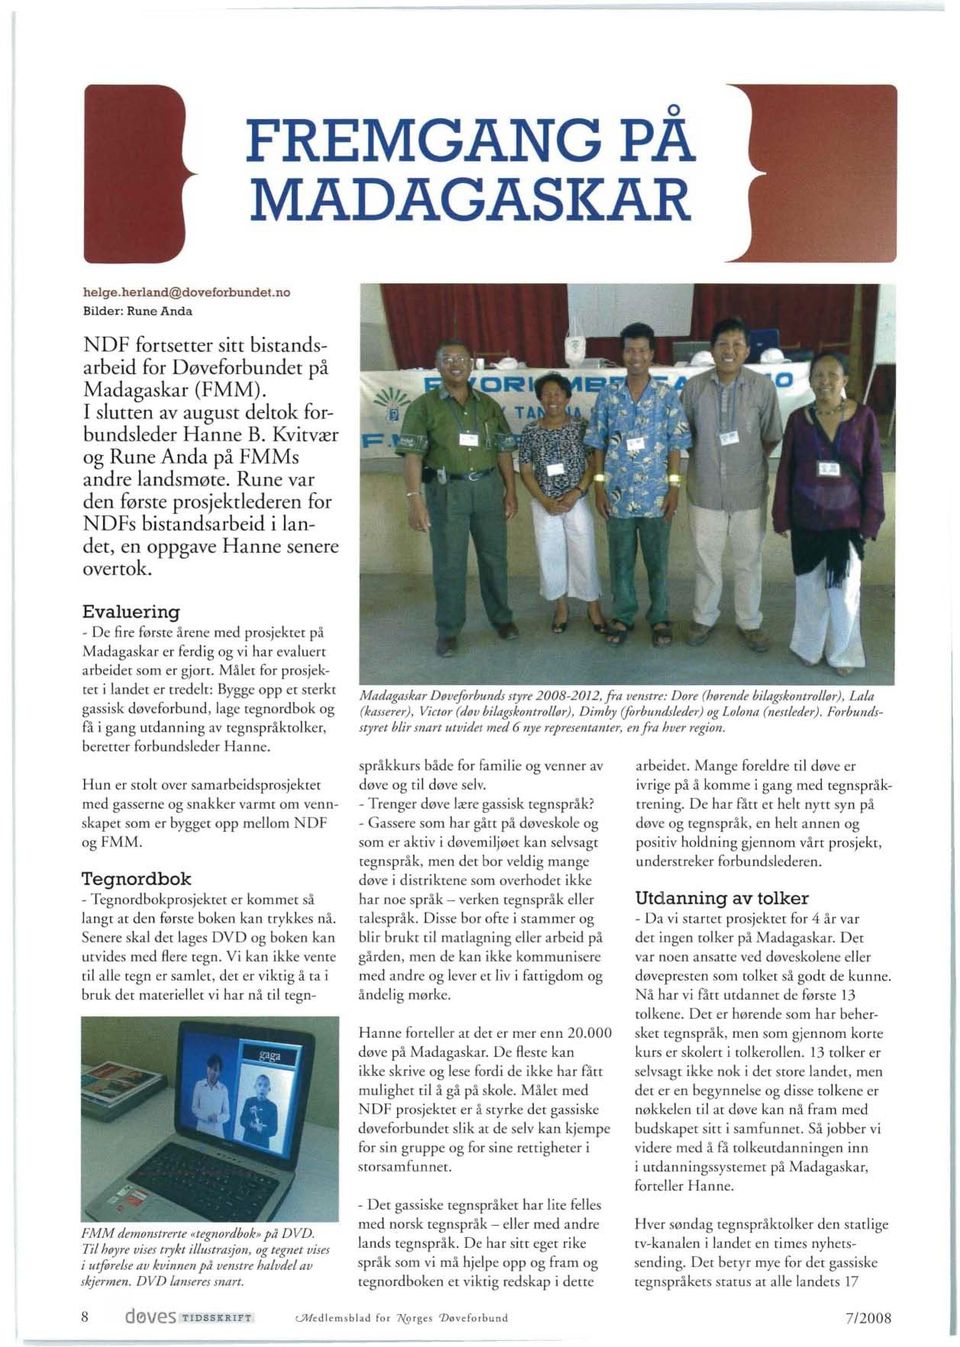 Evaluering - De fire første årene med prosjektet på Madagaskar er ferdig og vi har evaluert arbeidet som er gjort.